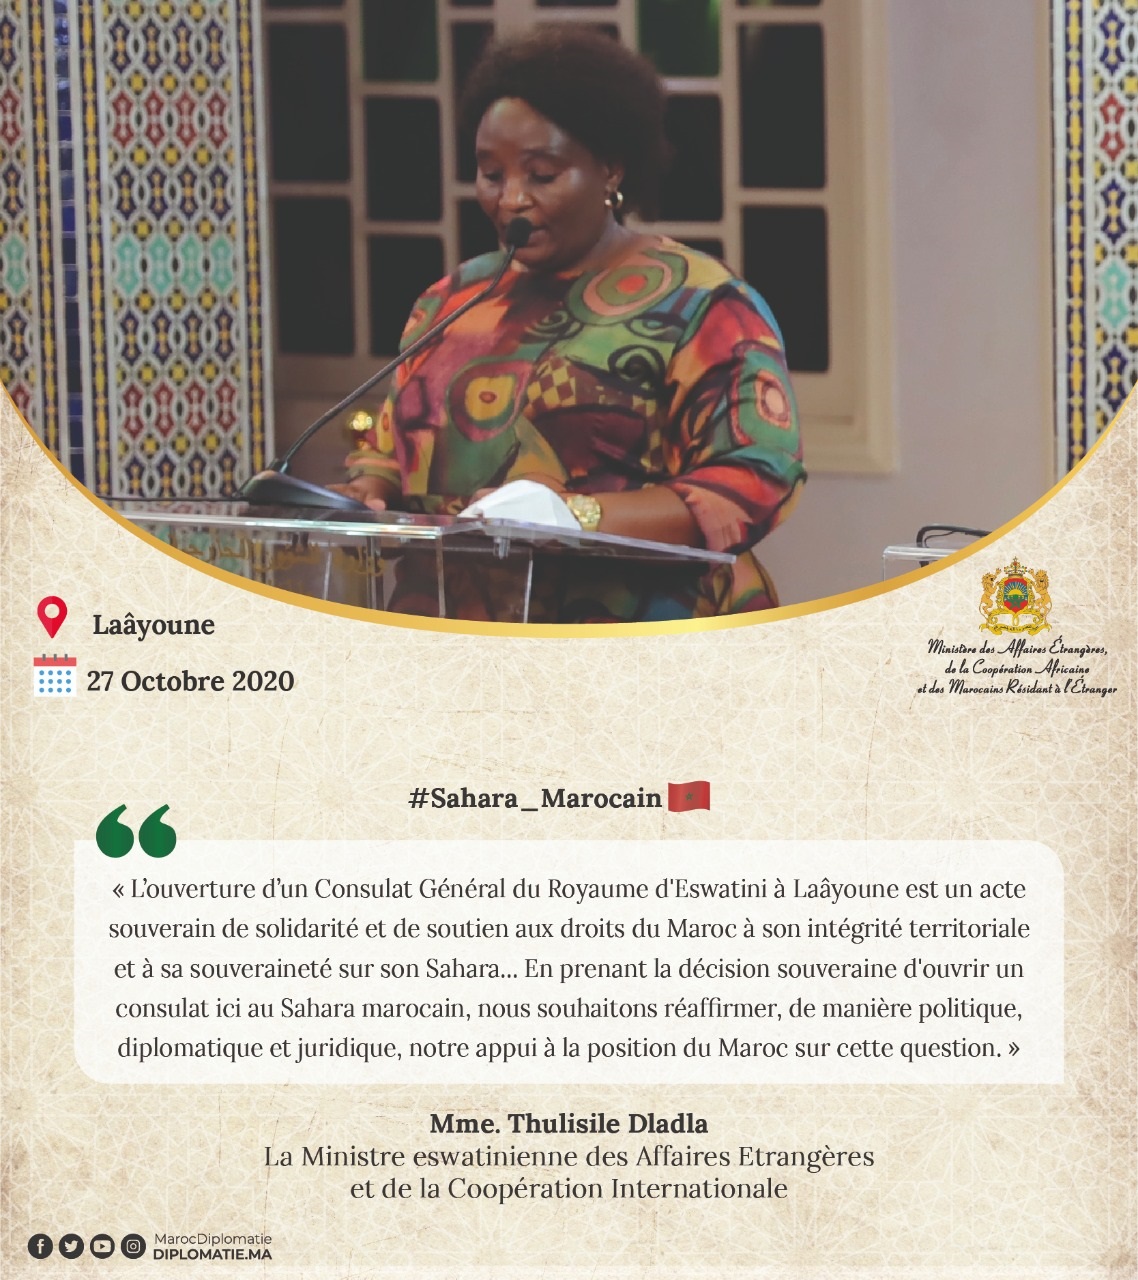 Déclaration de Mme. Thulisile Dladla, Ministre eswatinienne des Affaires Etrangères et de la Coopération Internationale